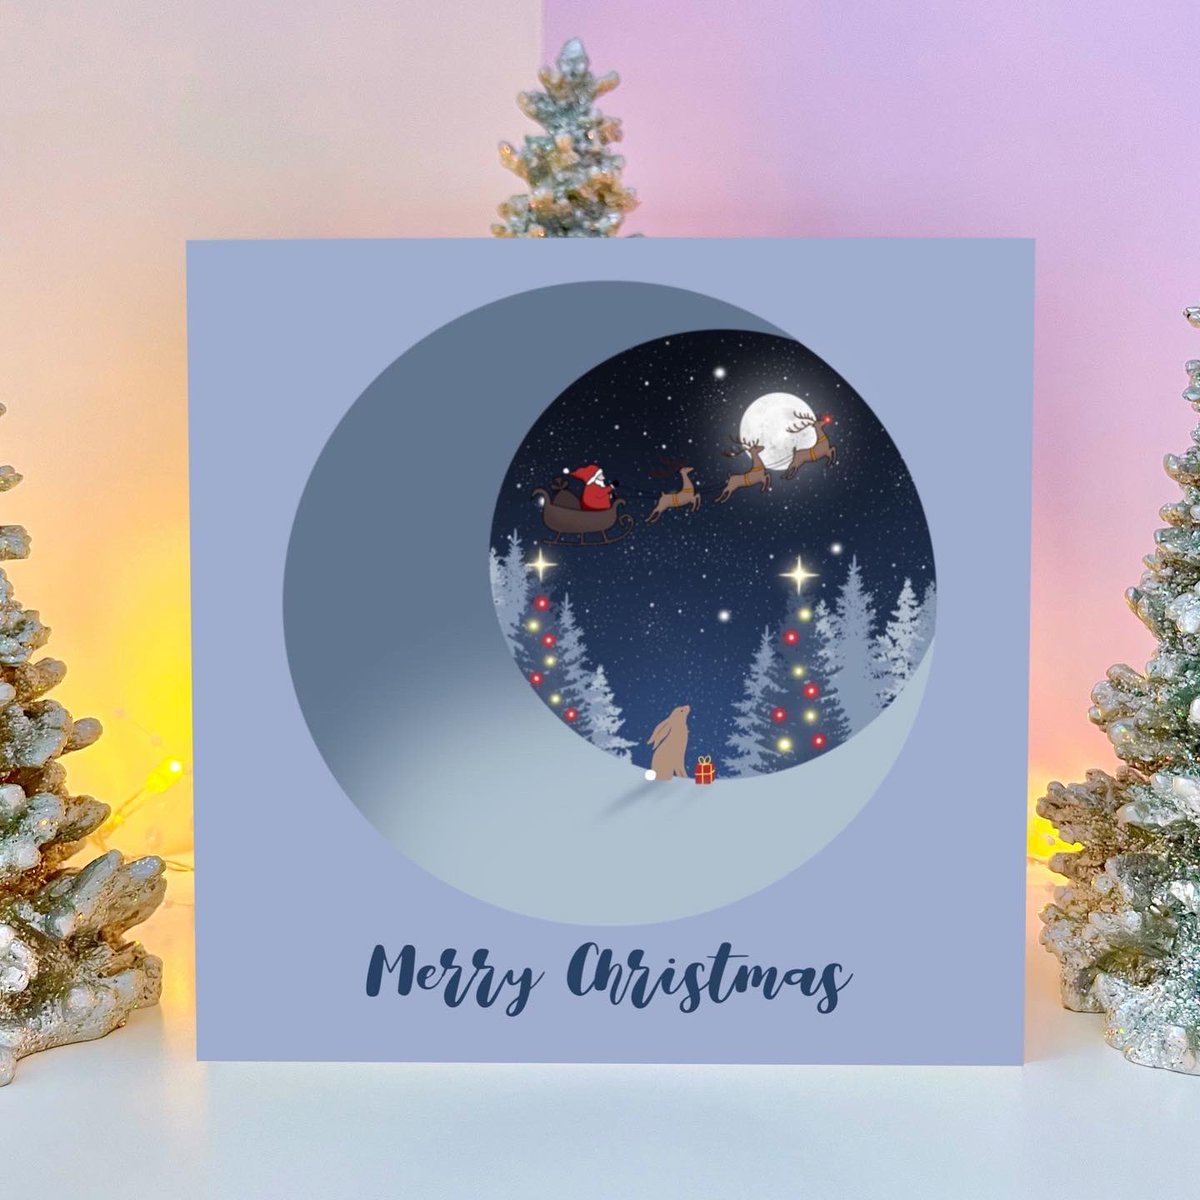 The Hare and Santa Claus pack of five Christmas cards 💙💙💙 #UKGiftHour #UKGiftAM #santa #christmas #christmascards #greetingcards #giftideas #etsyuk #etyshop #uksmallbiz #shopindie  etsy.me/3u780Ut